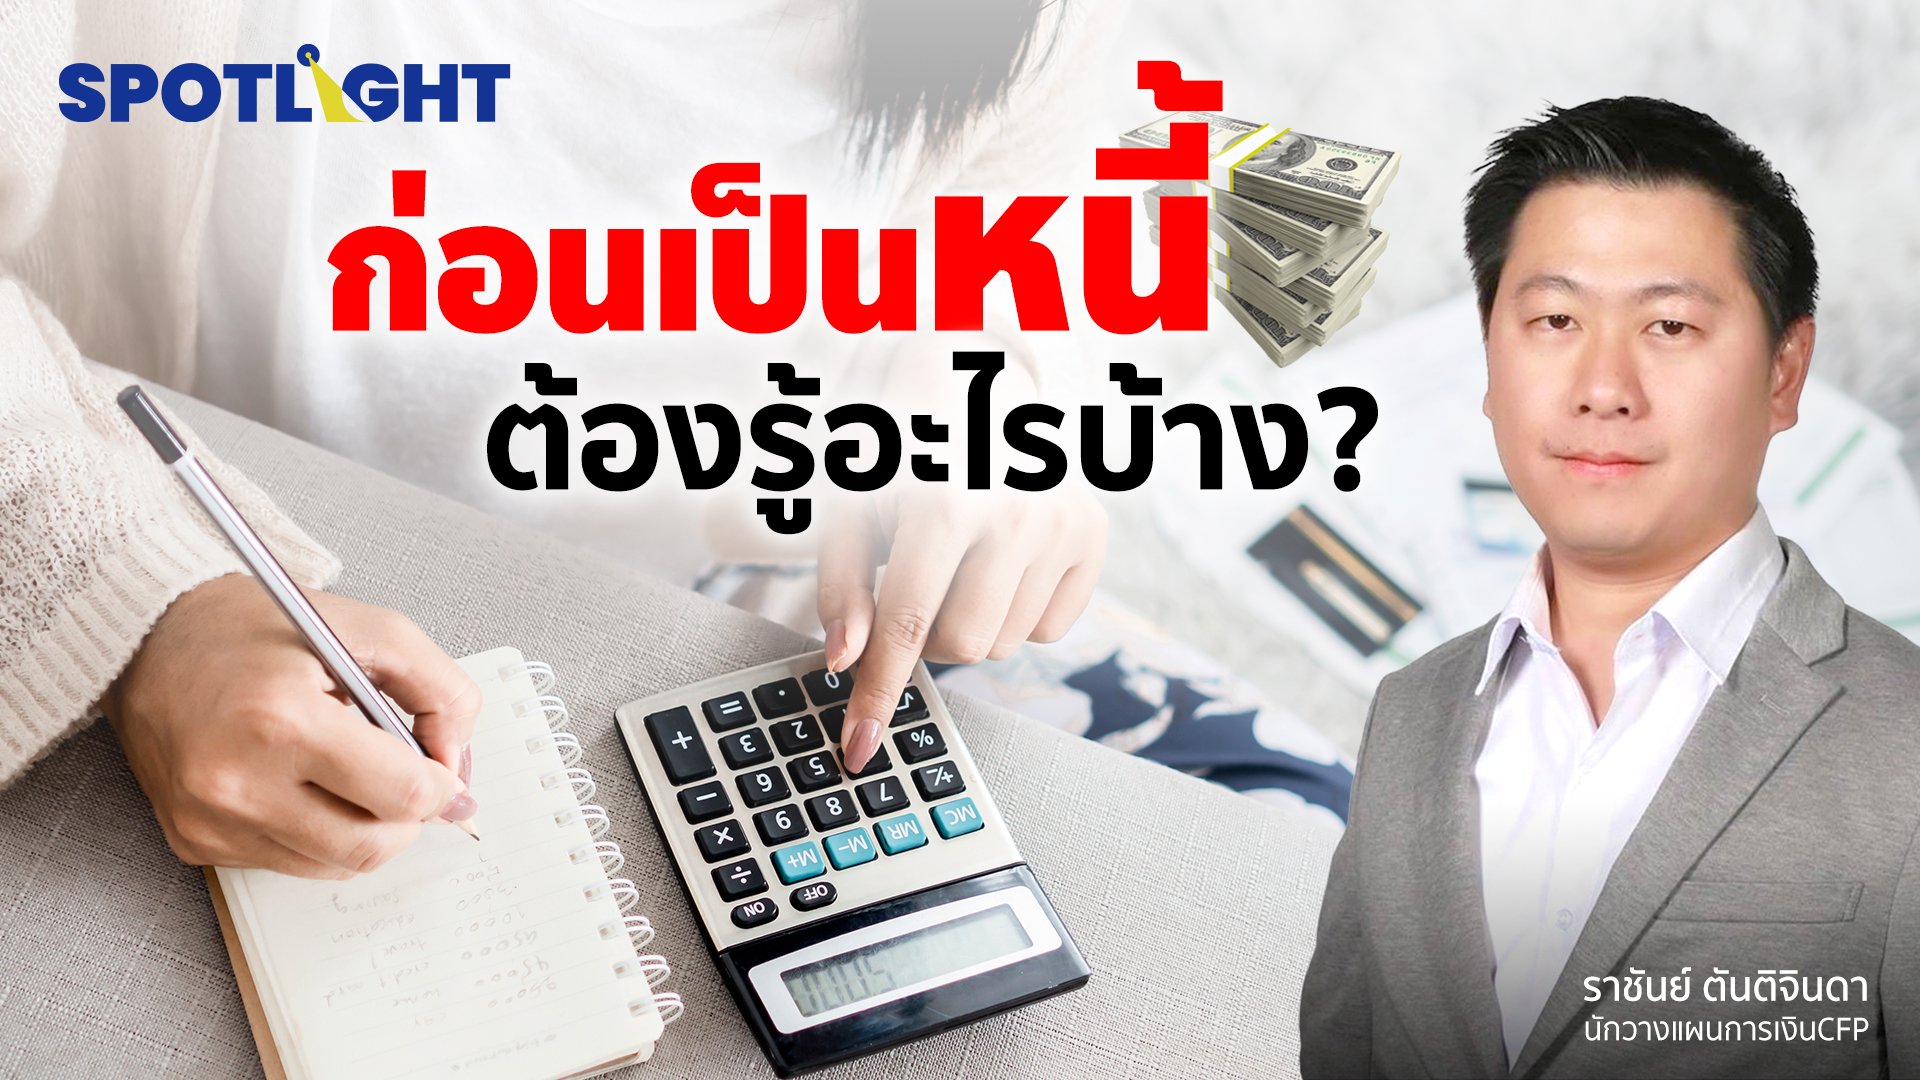 ก่อนเป็นหนี้ต้องรู้อะไรบ้าง? | Spotlight | 14 ส.ค. 65 | AMARIN TVHD34